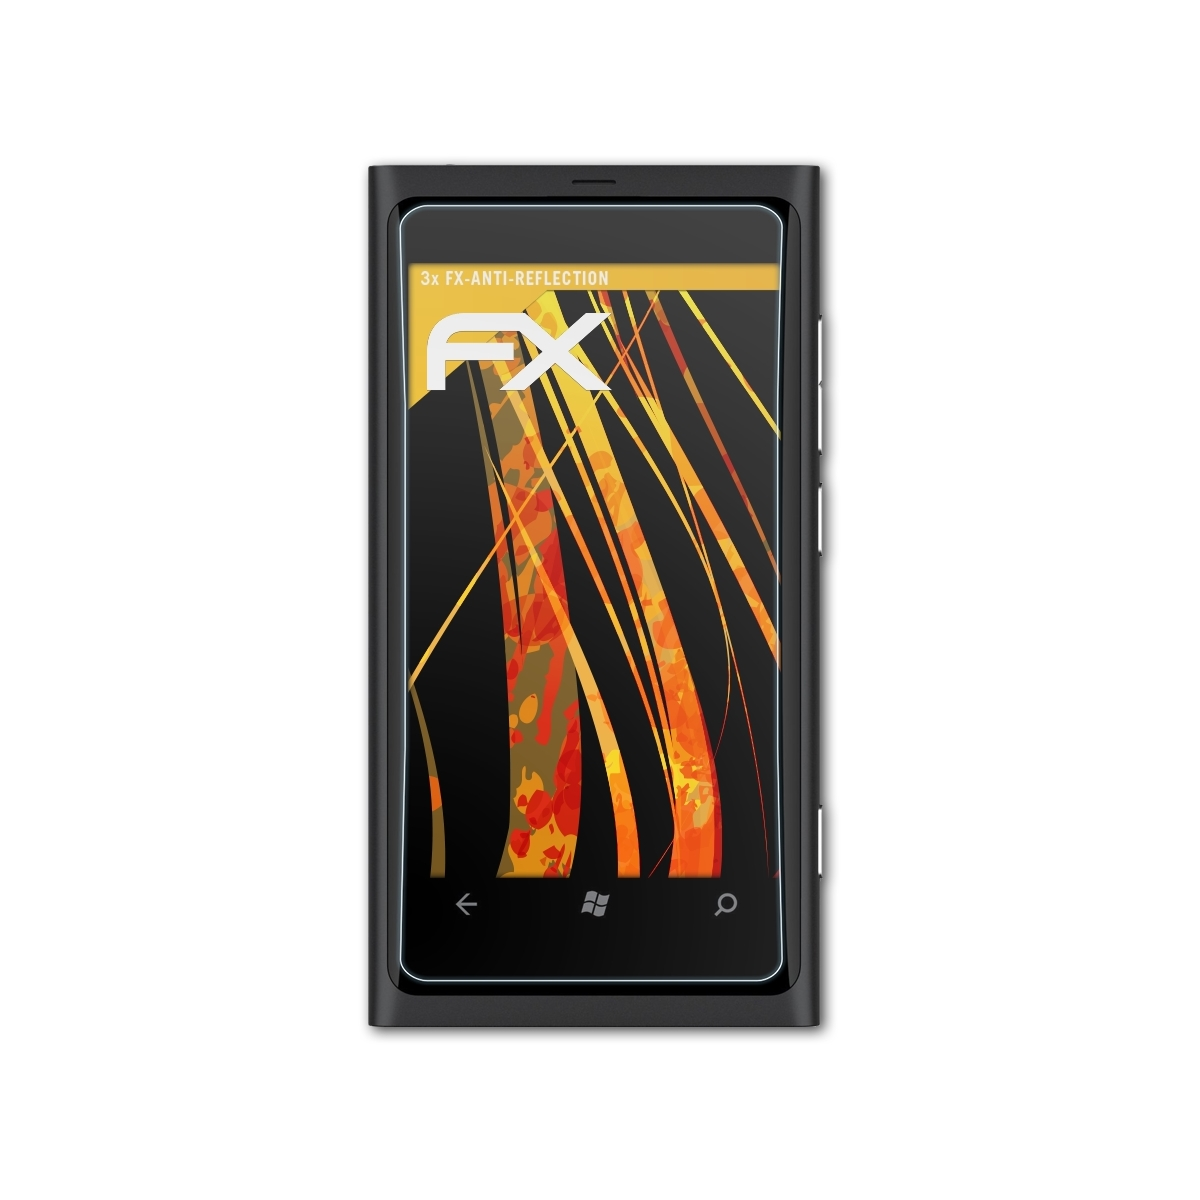 3x Displayschutz(für ATFOLIX FX-Antireflex Nokia 800) Lumia